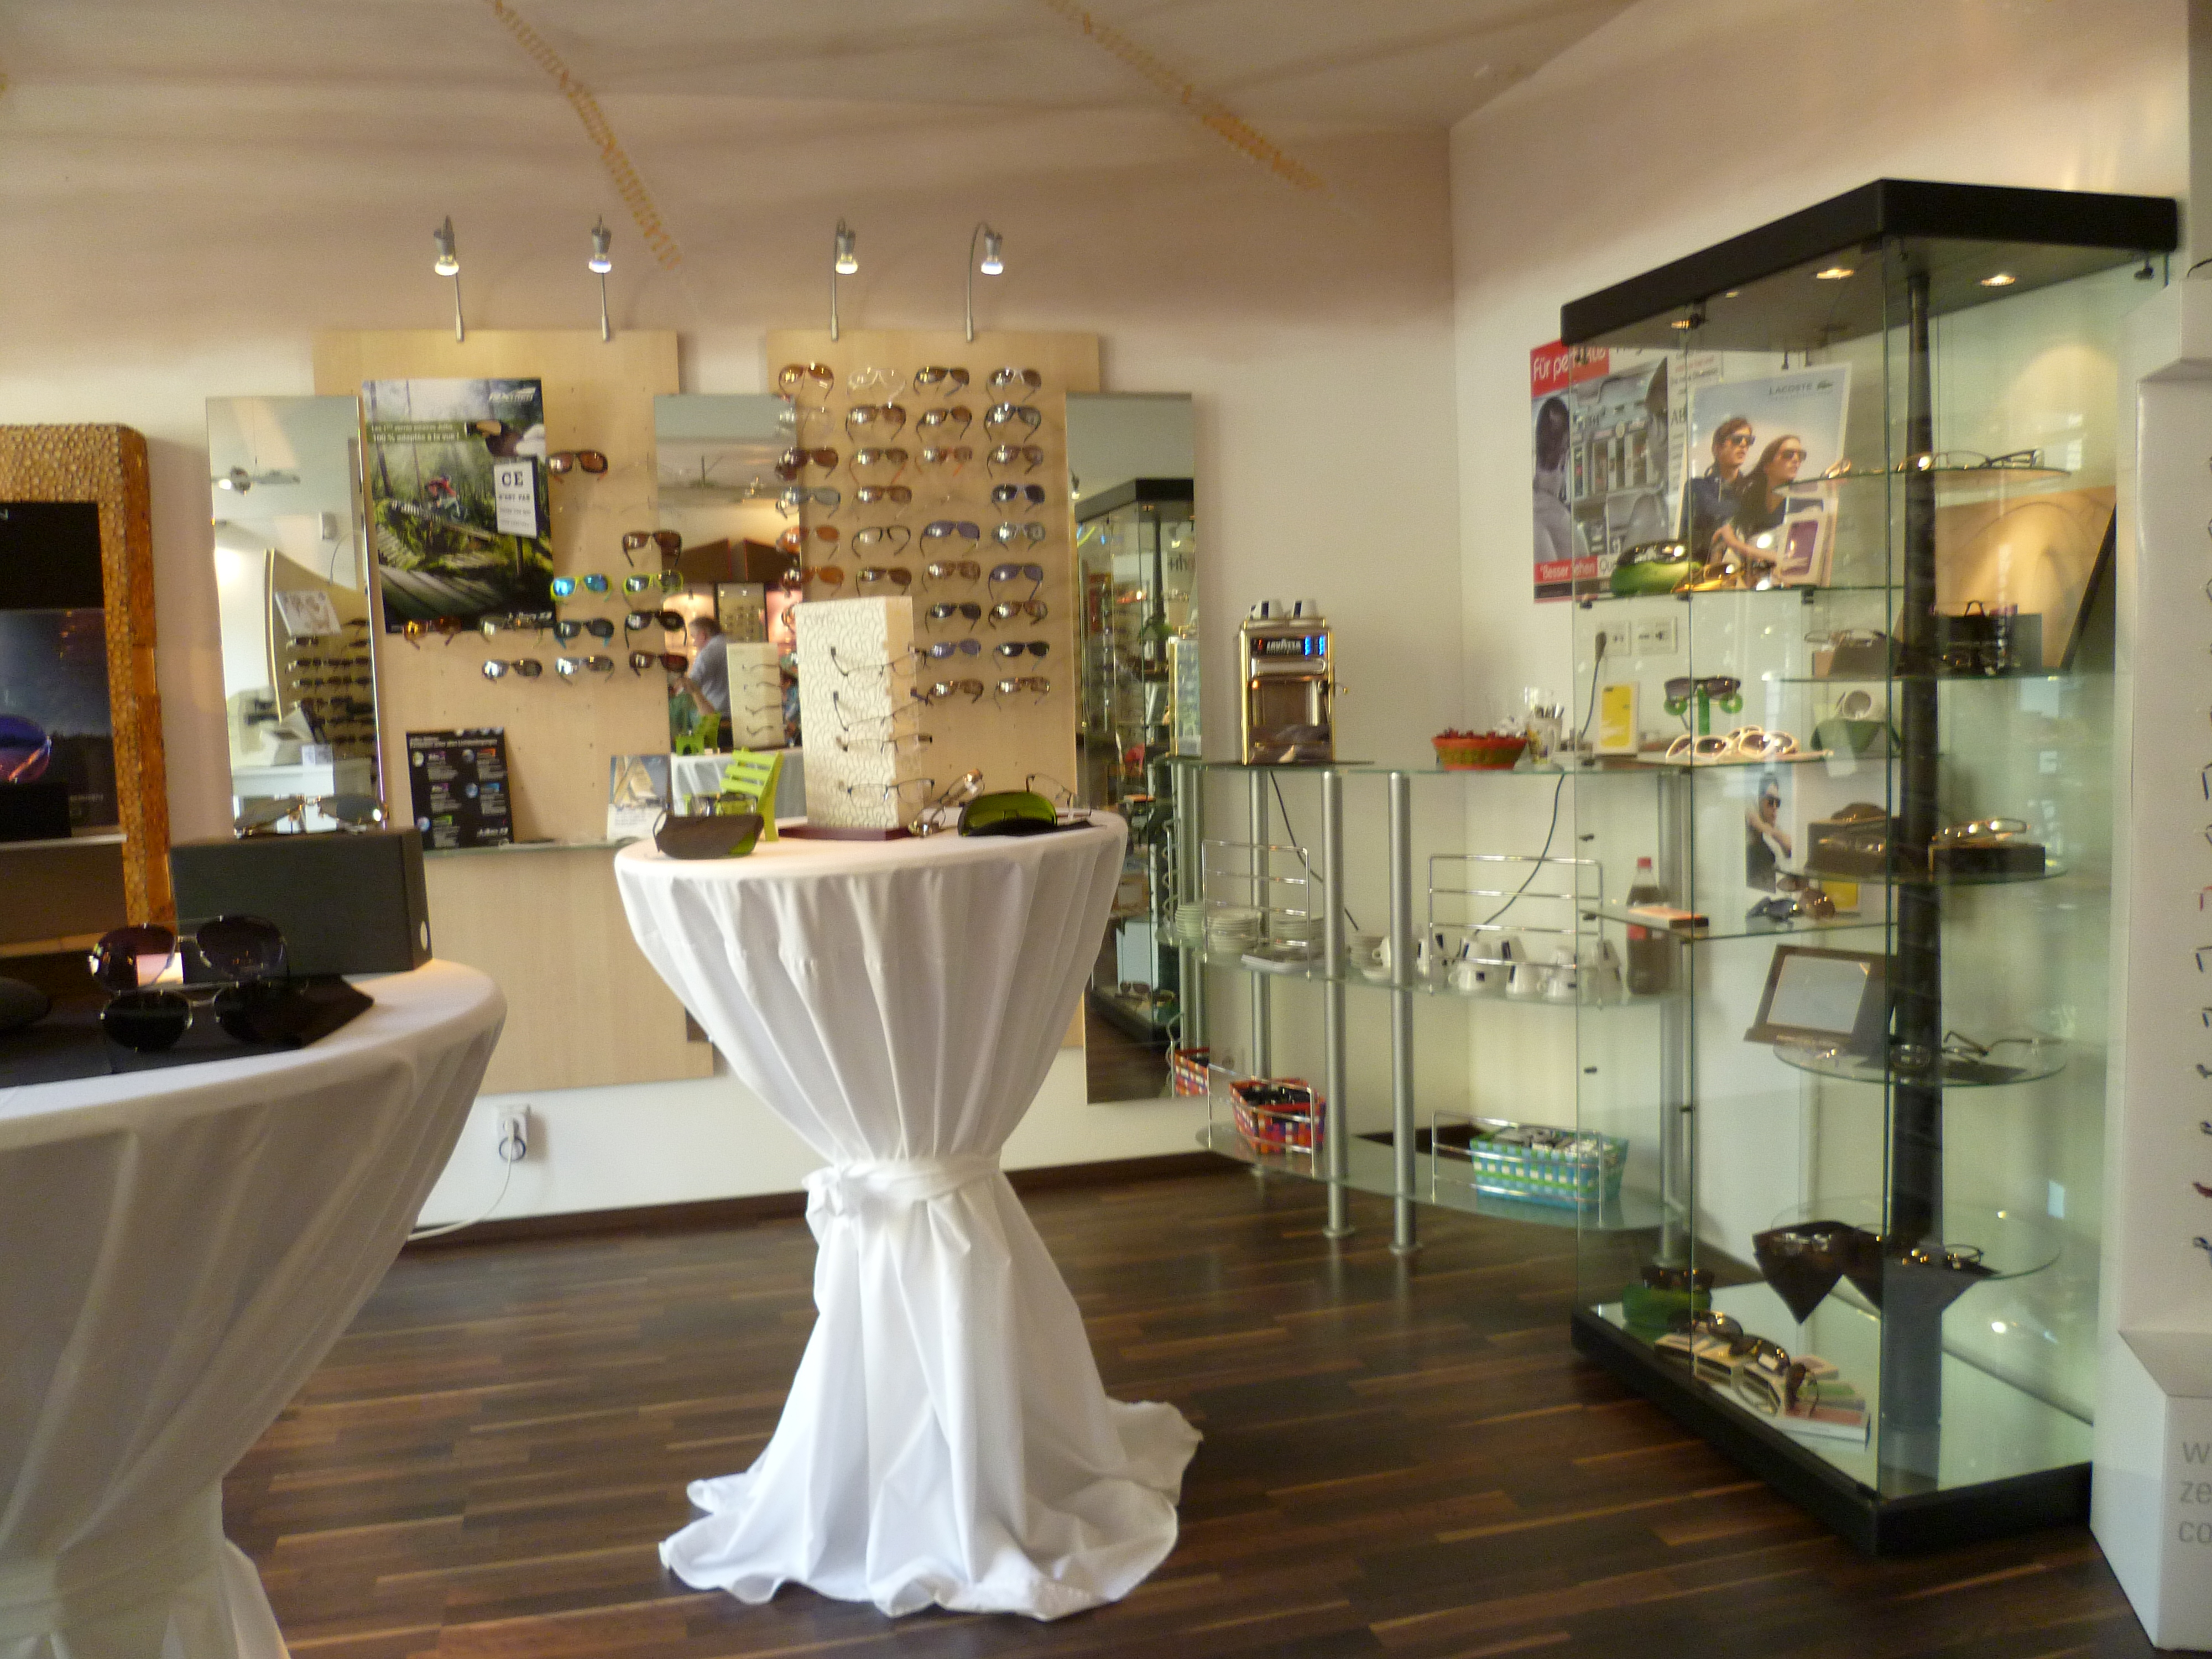 Nebenraum mit Kaffeeautomat und Geschirr
Sonnenbrillenausstellung